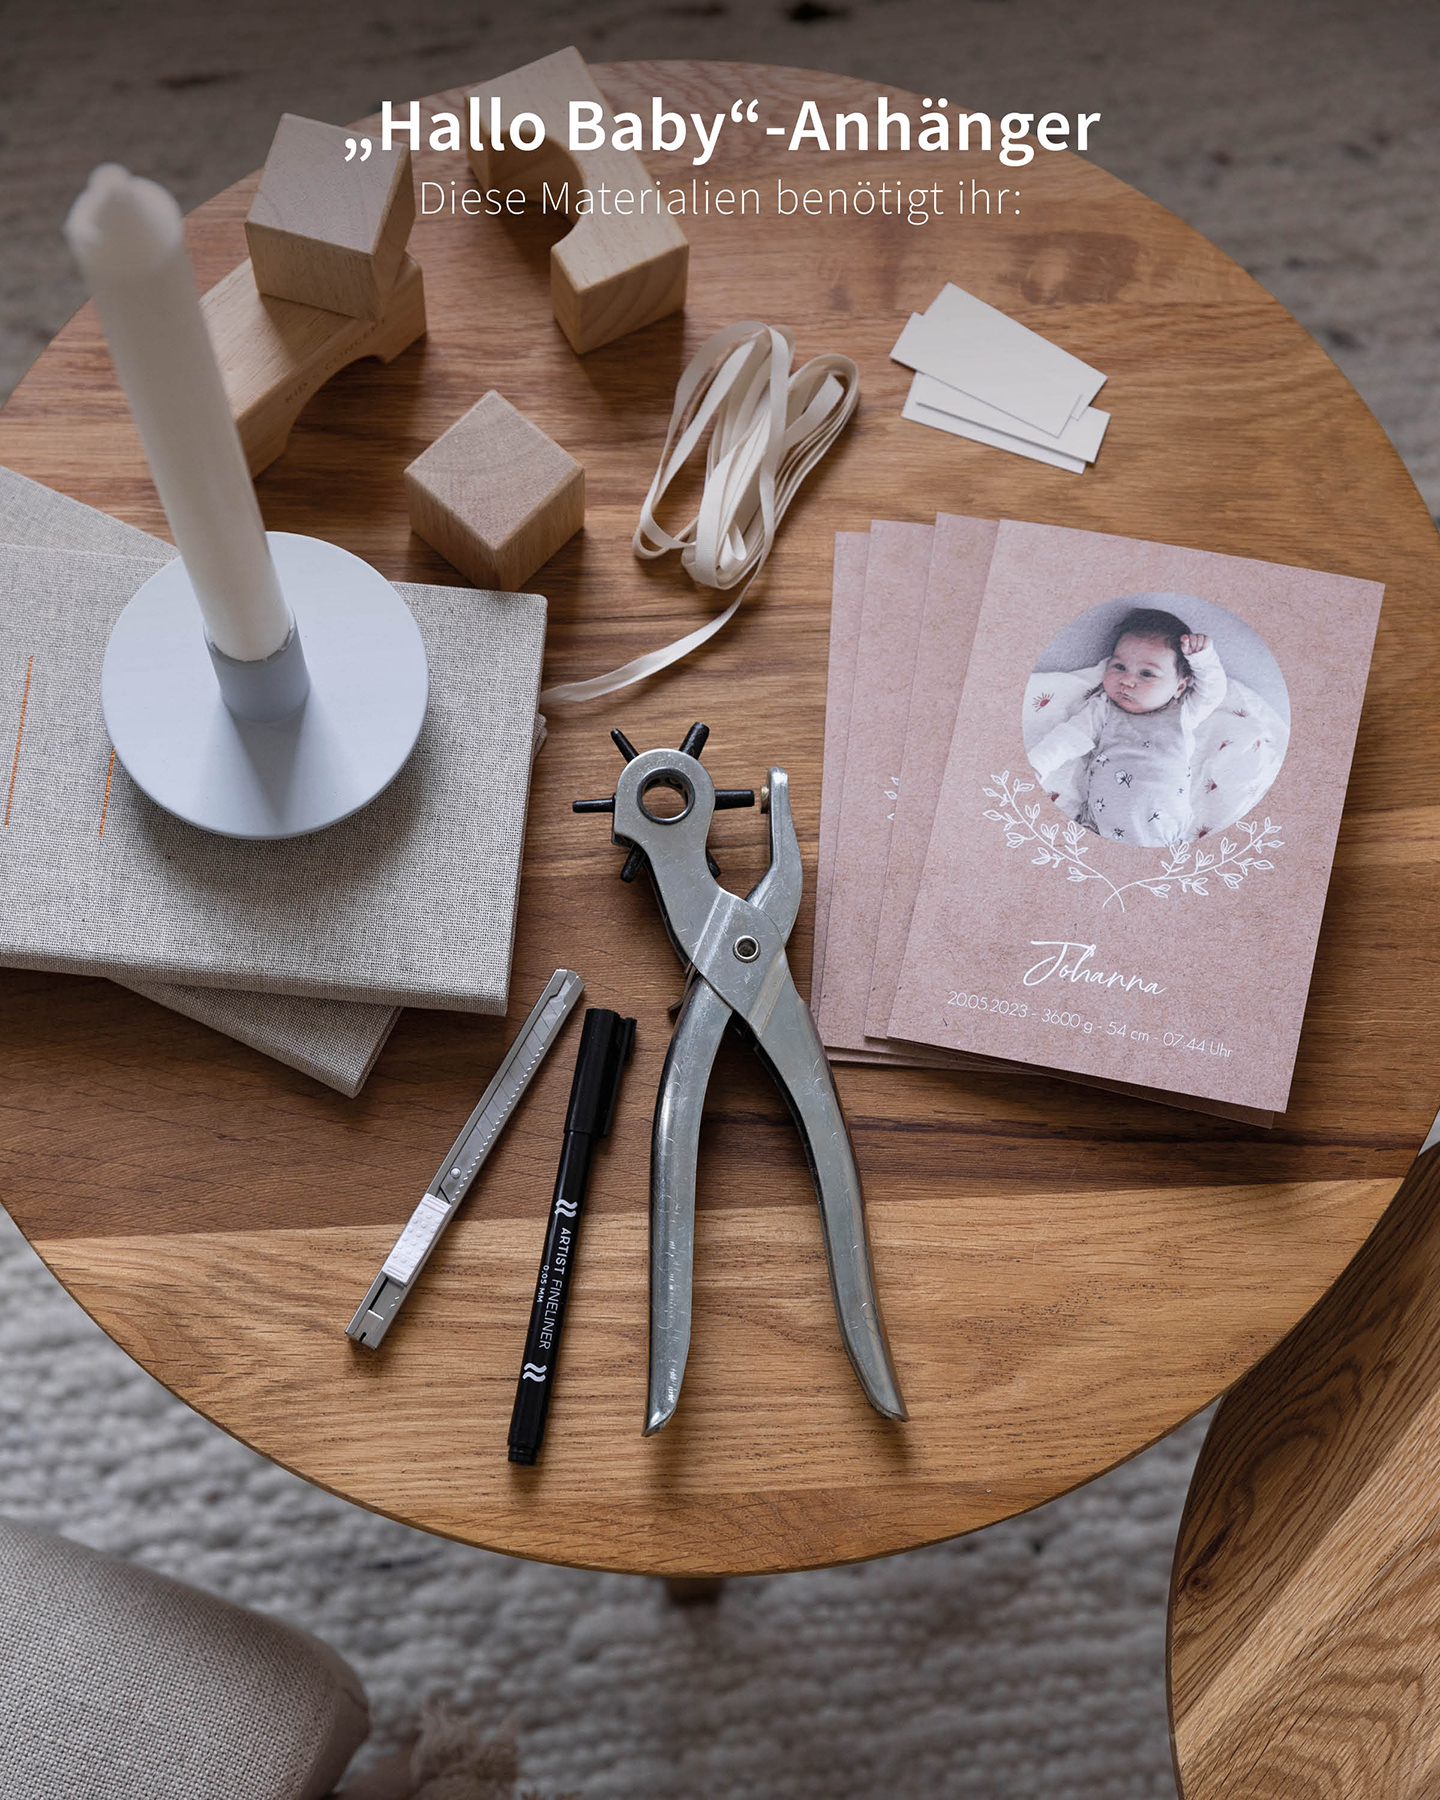 DIY Geburtskarte basteln. Materialien als Übersicht auf dem Tisch liegend. 